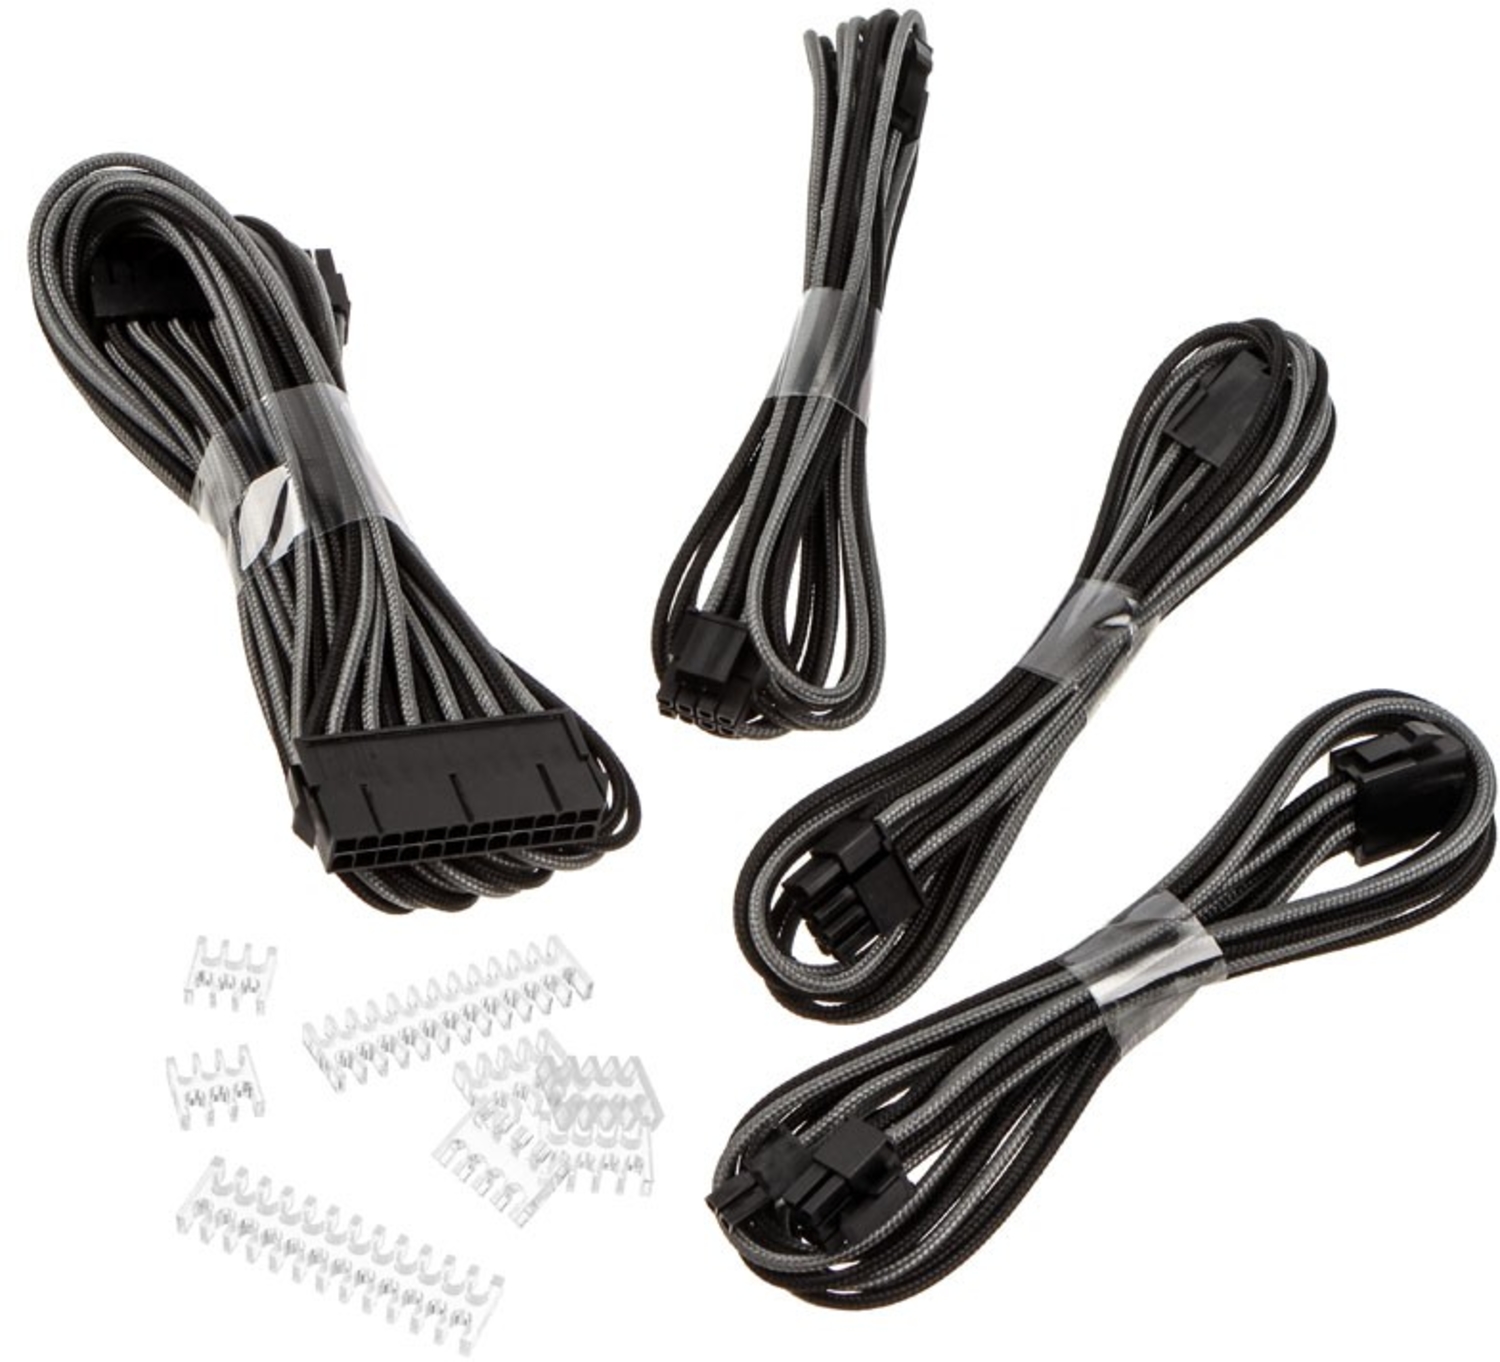 Kit de Expansión Phanteks Cables Sleeved 50cm Negro / Gris